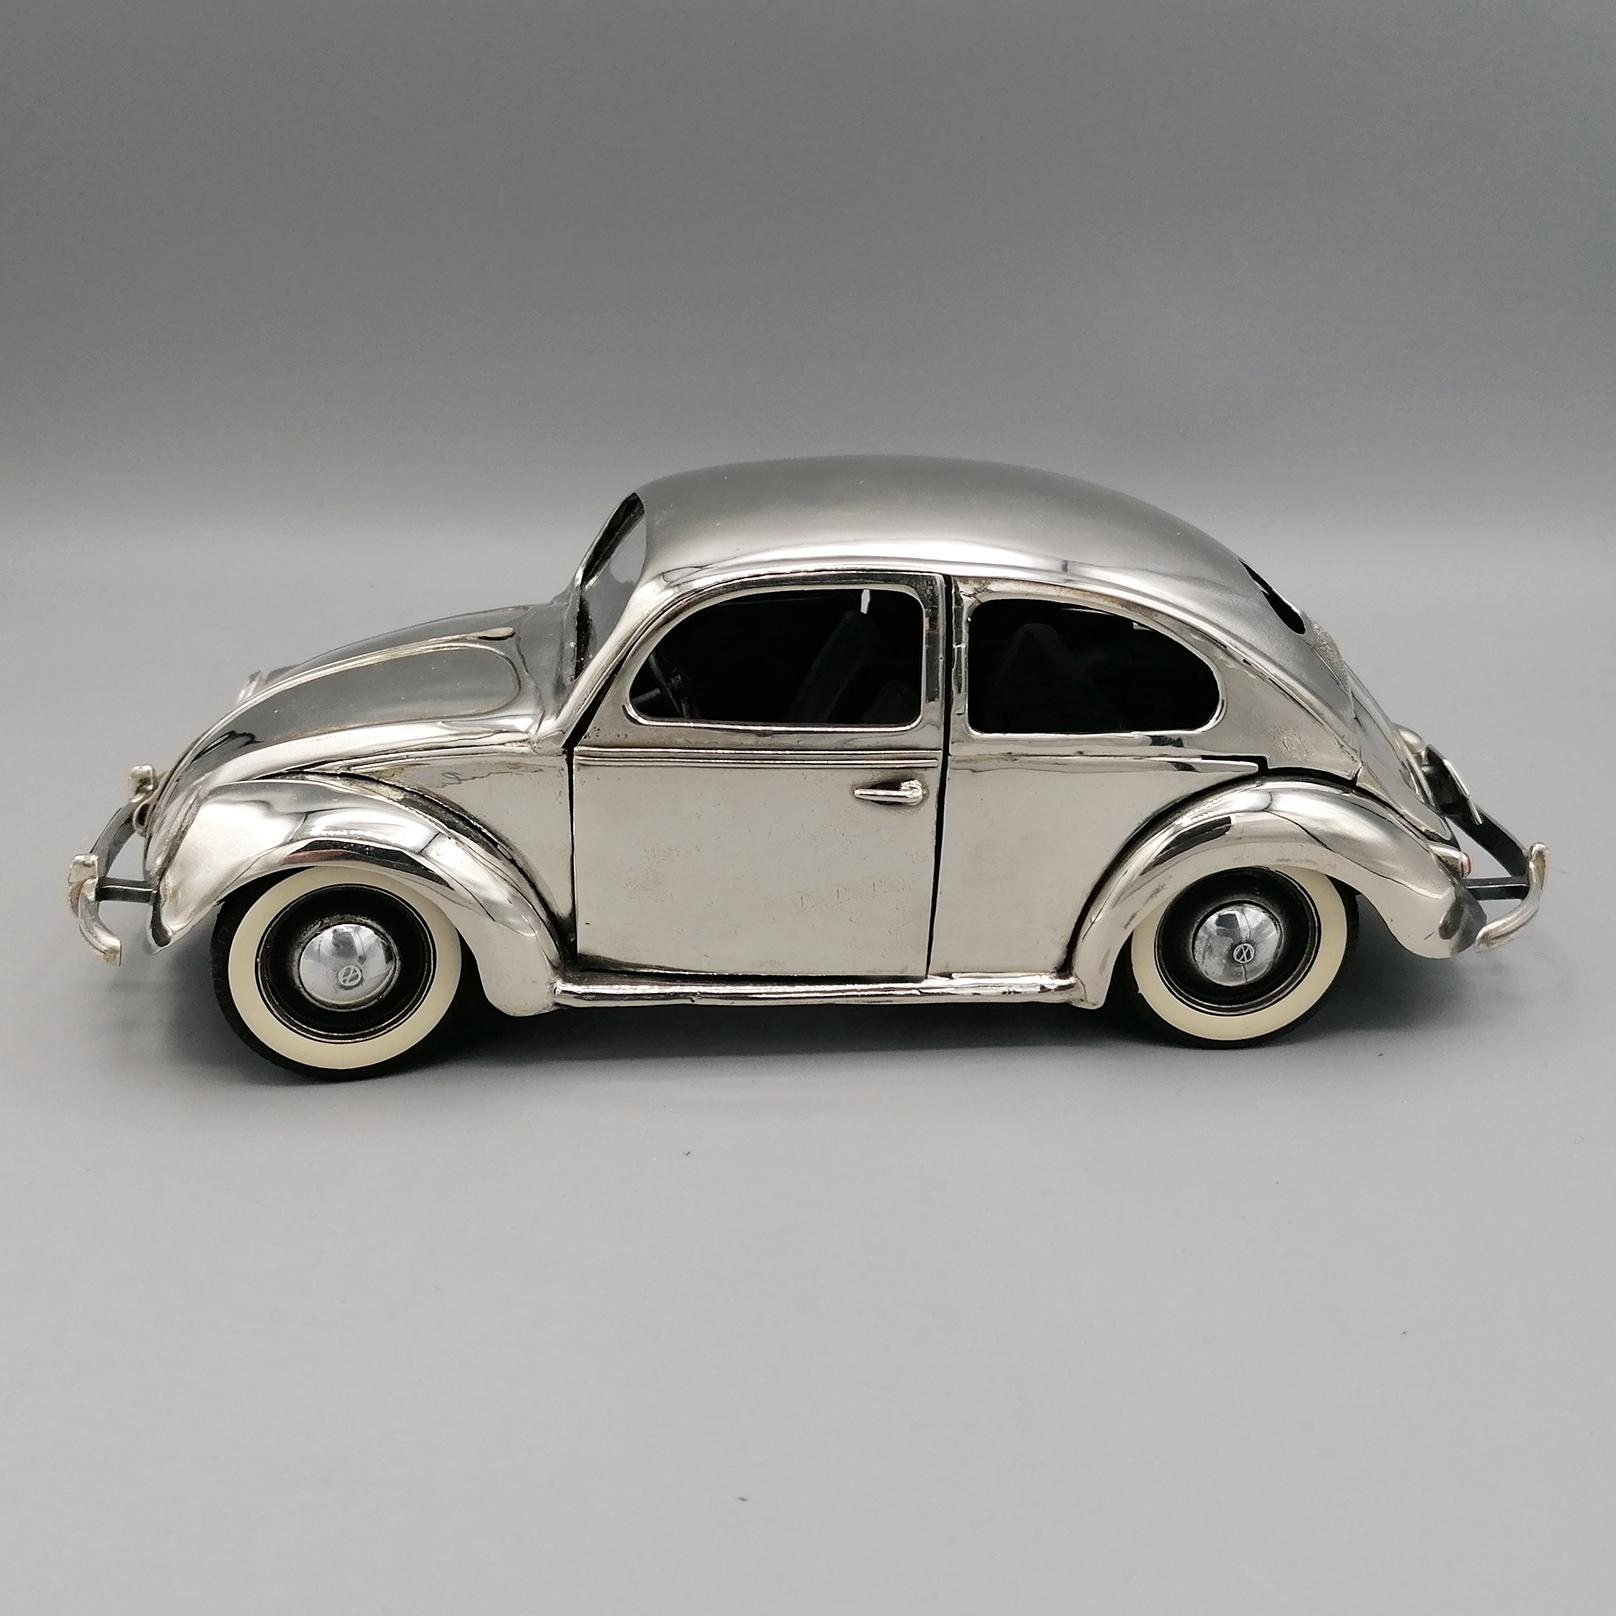 20. Jahrhundert Italienisches Sterlingsilber Volkswagen Käfer Typ 1 Modellauto 1945 circa.
Volkswagen Käfer Modellauto in Sterlingsilber.
Die Karosserie des Käfers wird gegossen und von Hand gefeilt und poliert, damit die Oberfläche glänzt.
Die